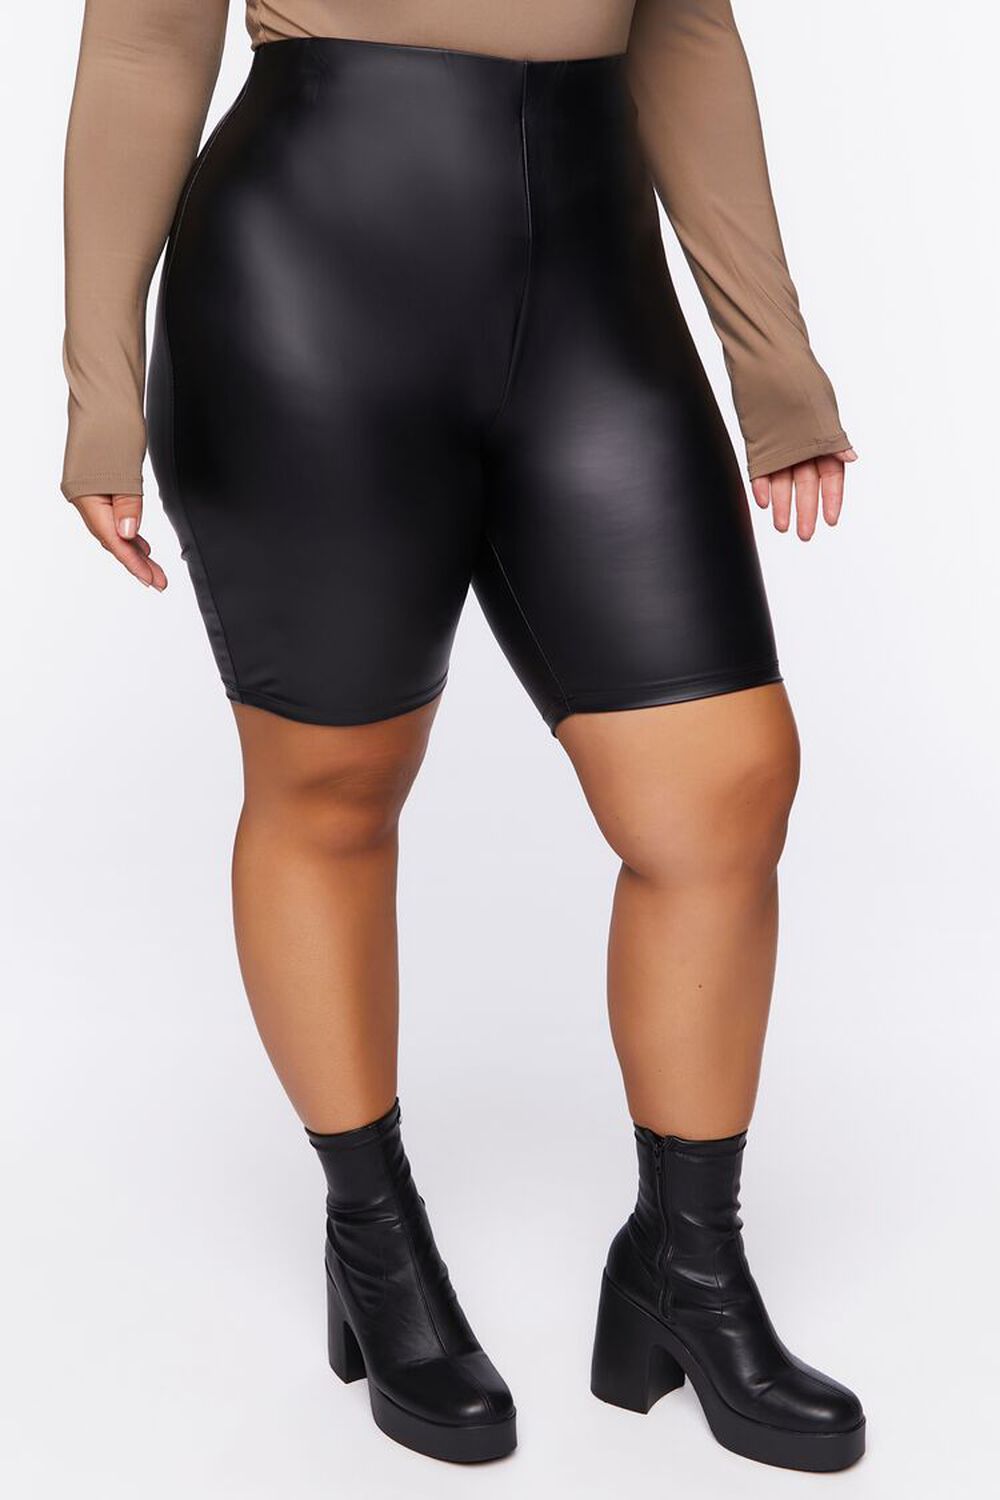 BLACK Plus Size Faux Leather Biker Shorts, image 3